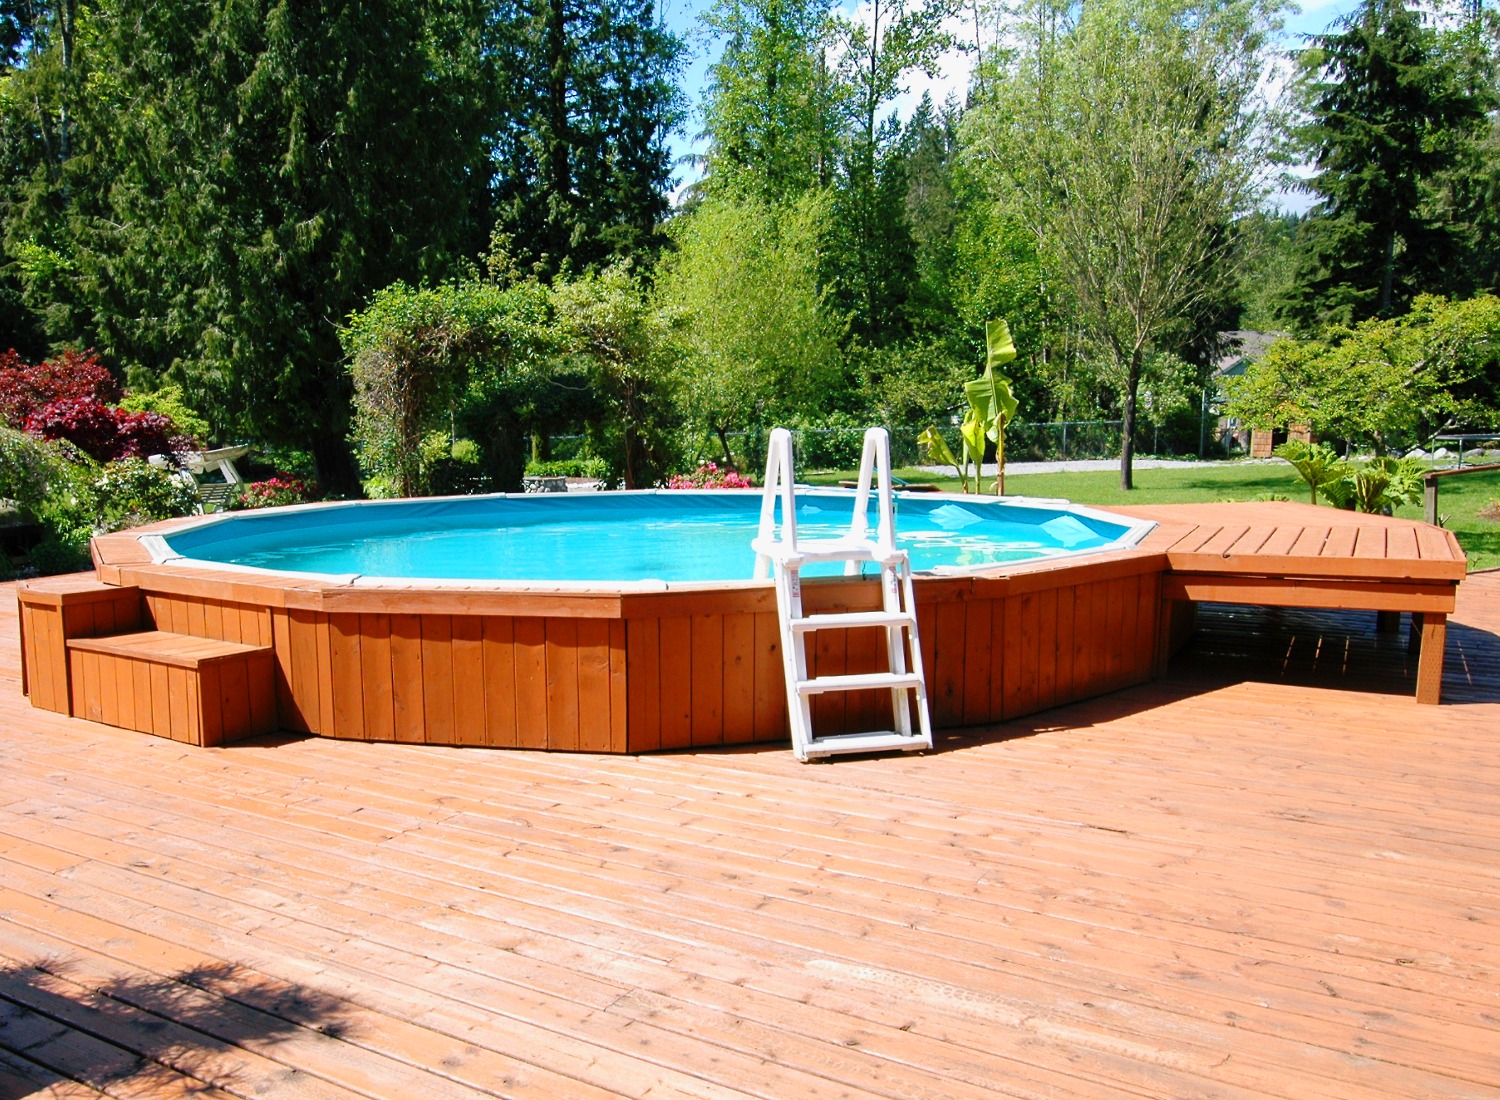 Wooden deck around an above ground pool